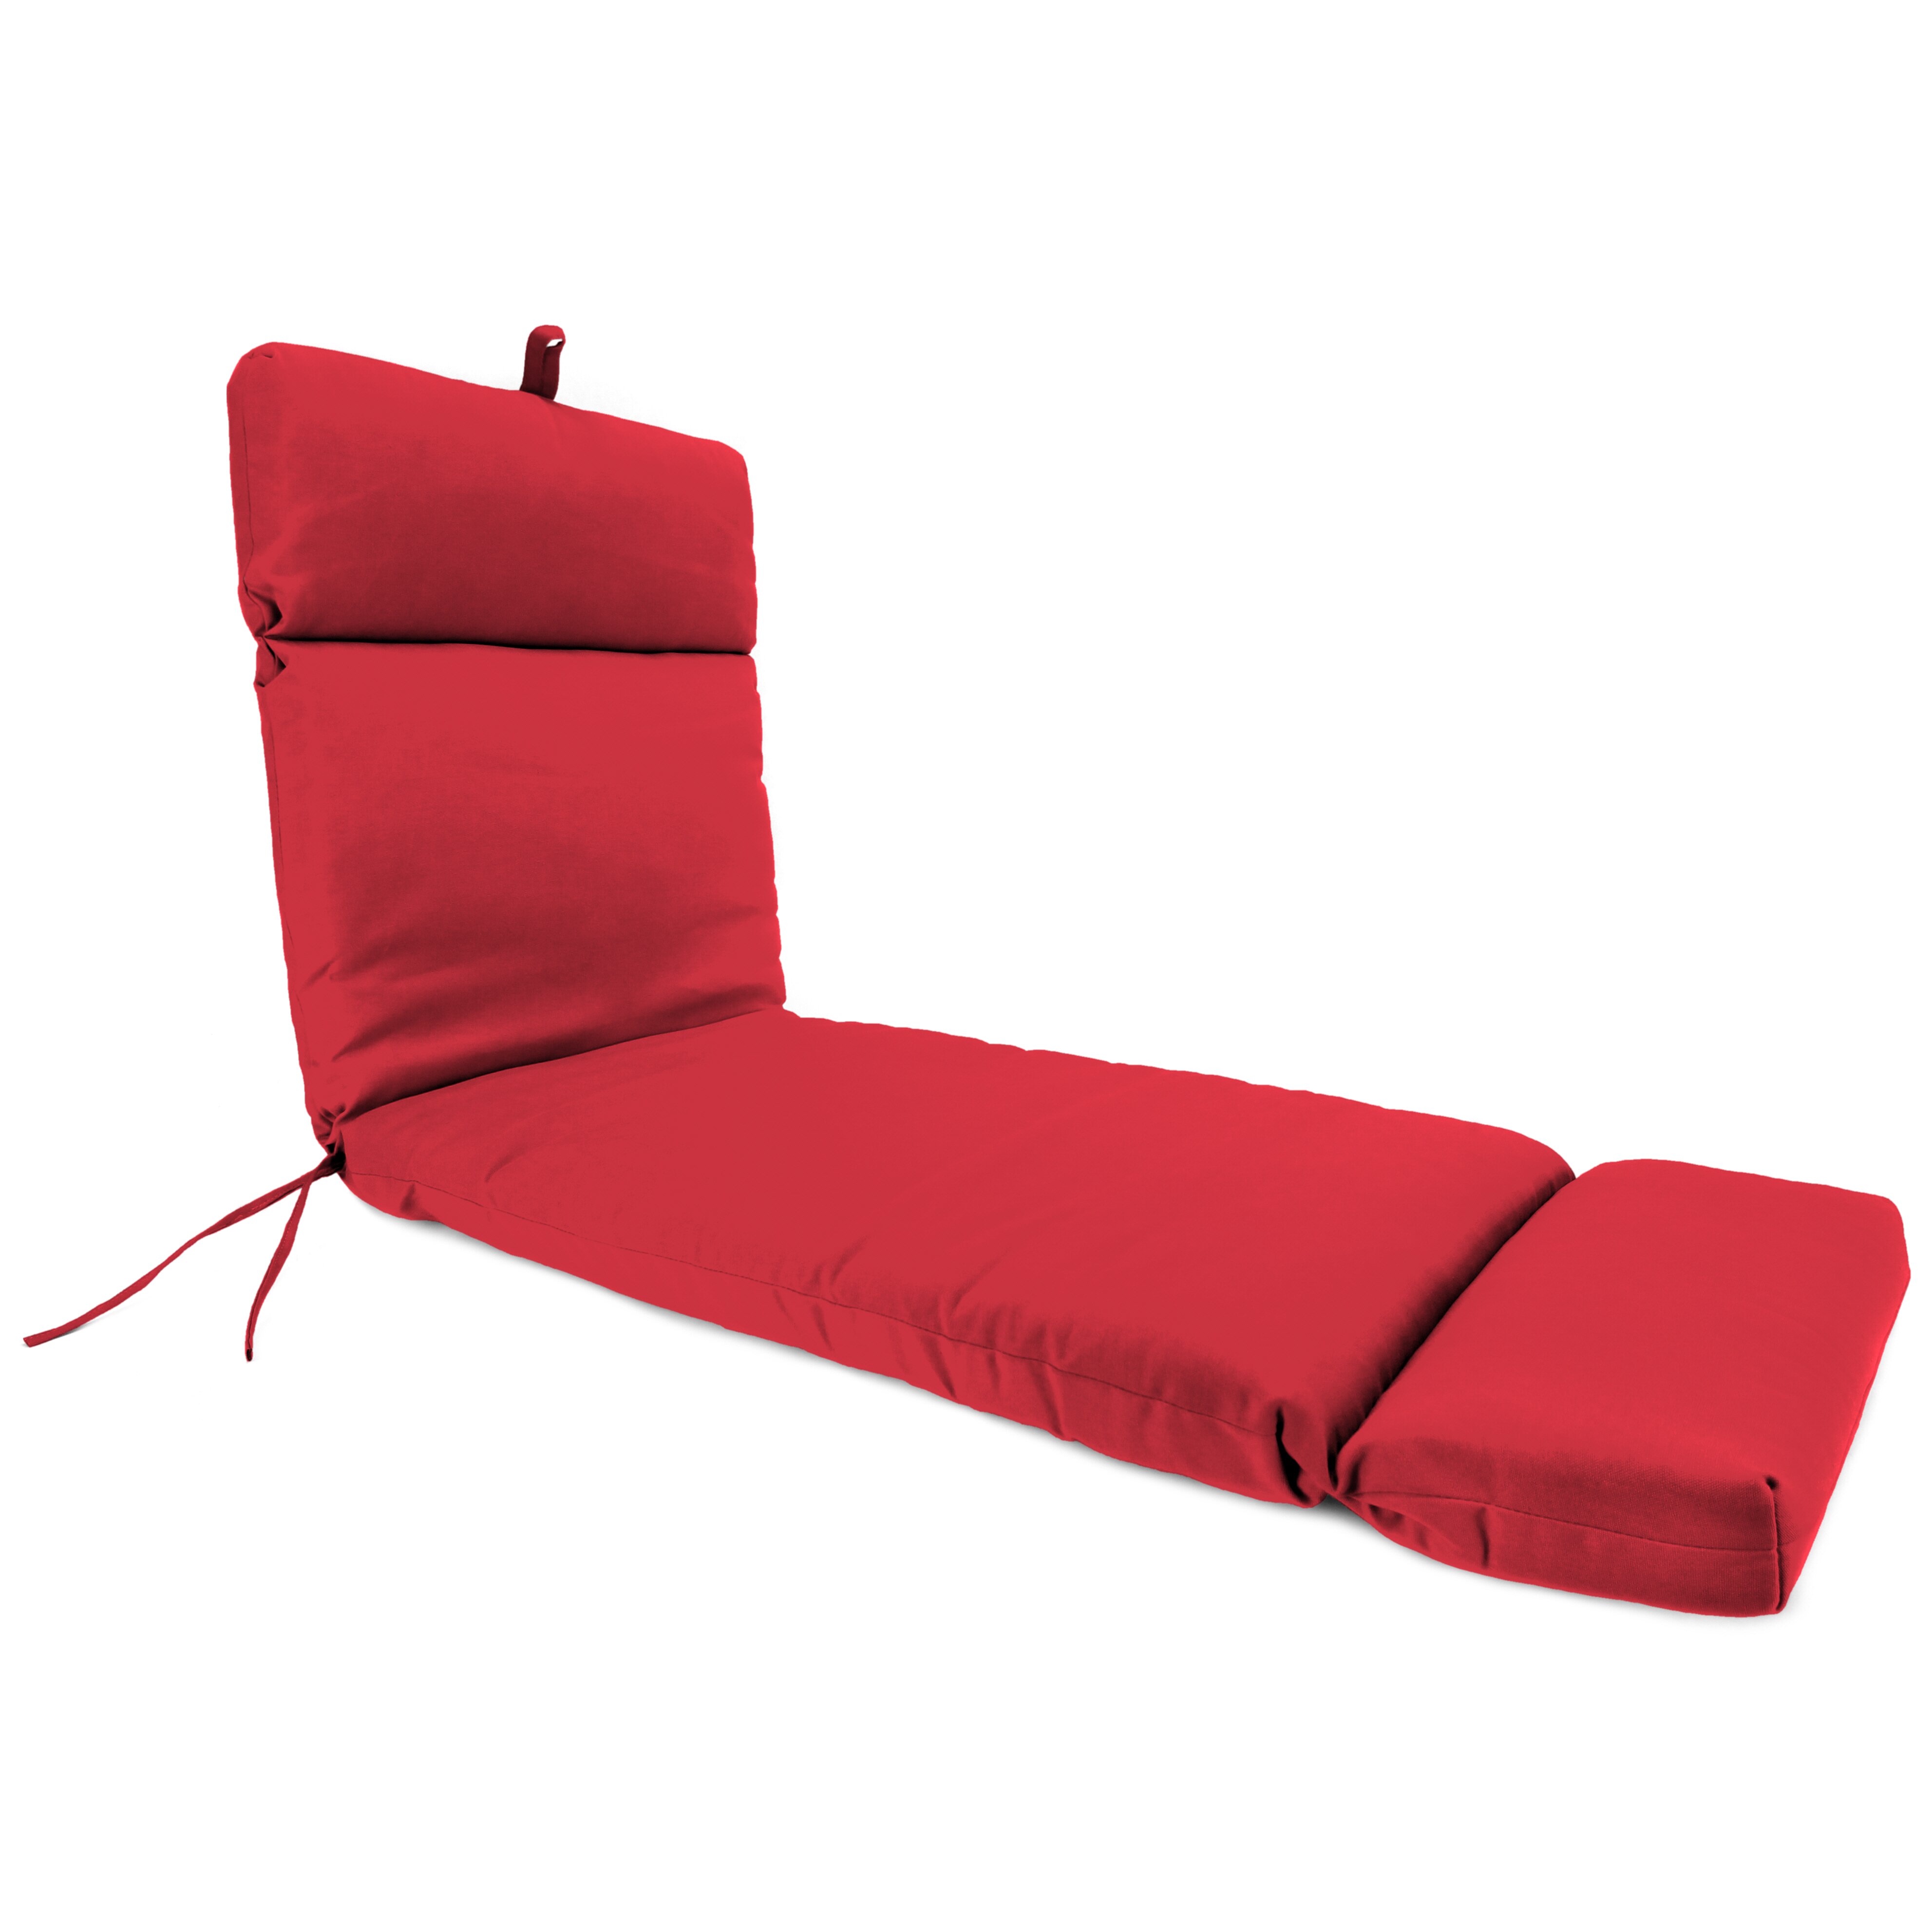  Lounge Chair Cushions Canada 